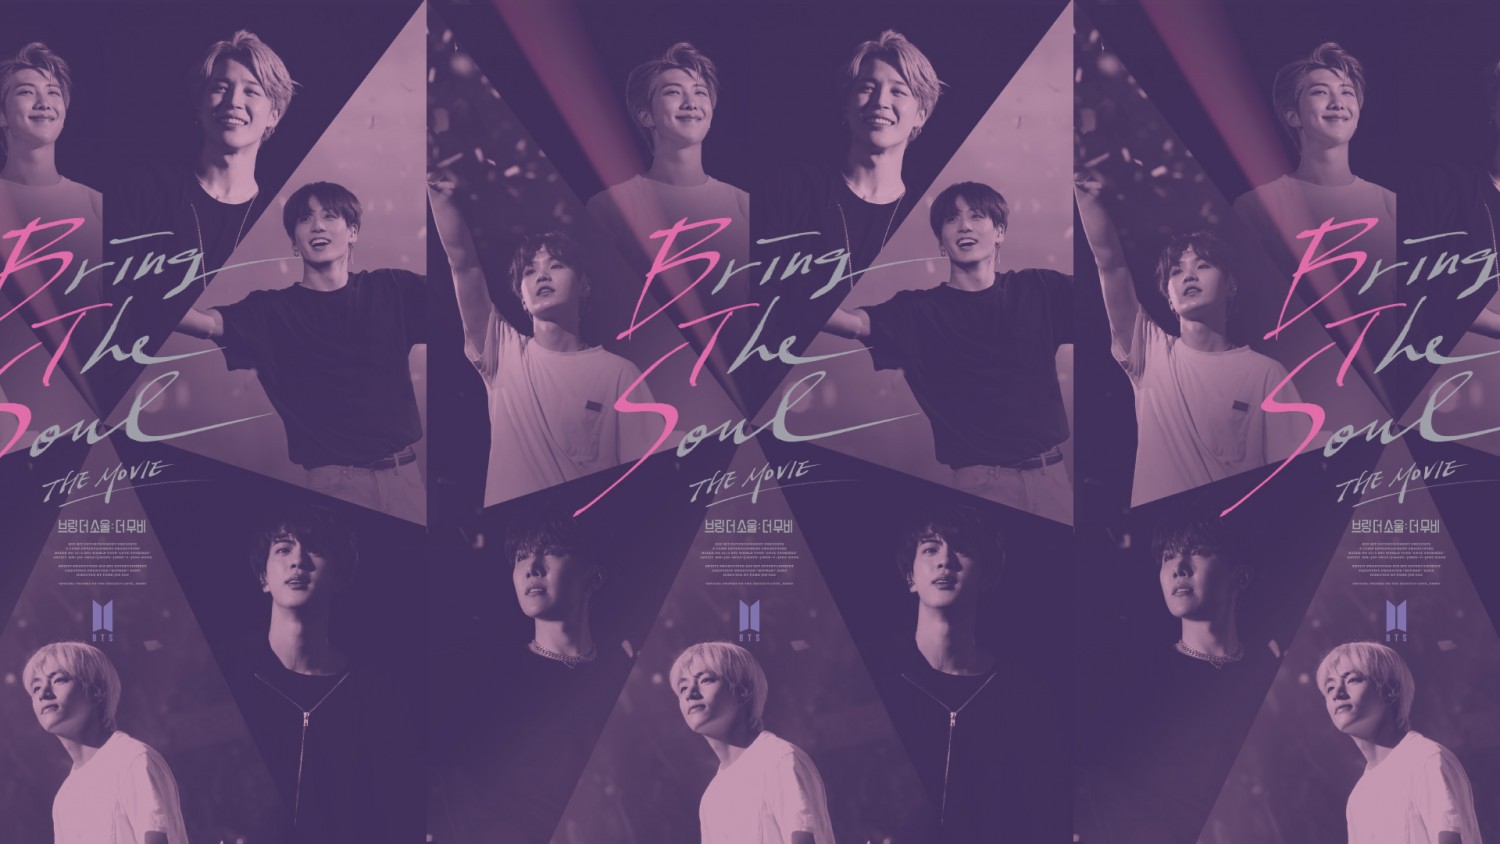 Старт российского проката фильма Bring the Soul: The Movie о группе BTS в ЦДМ